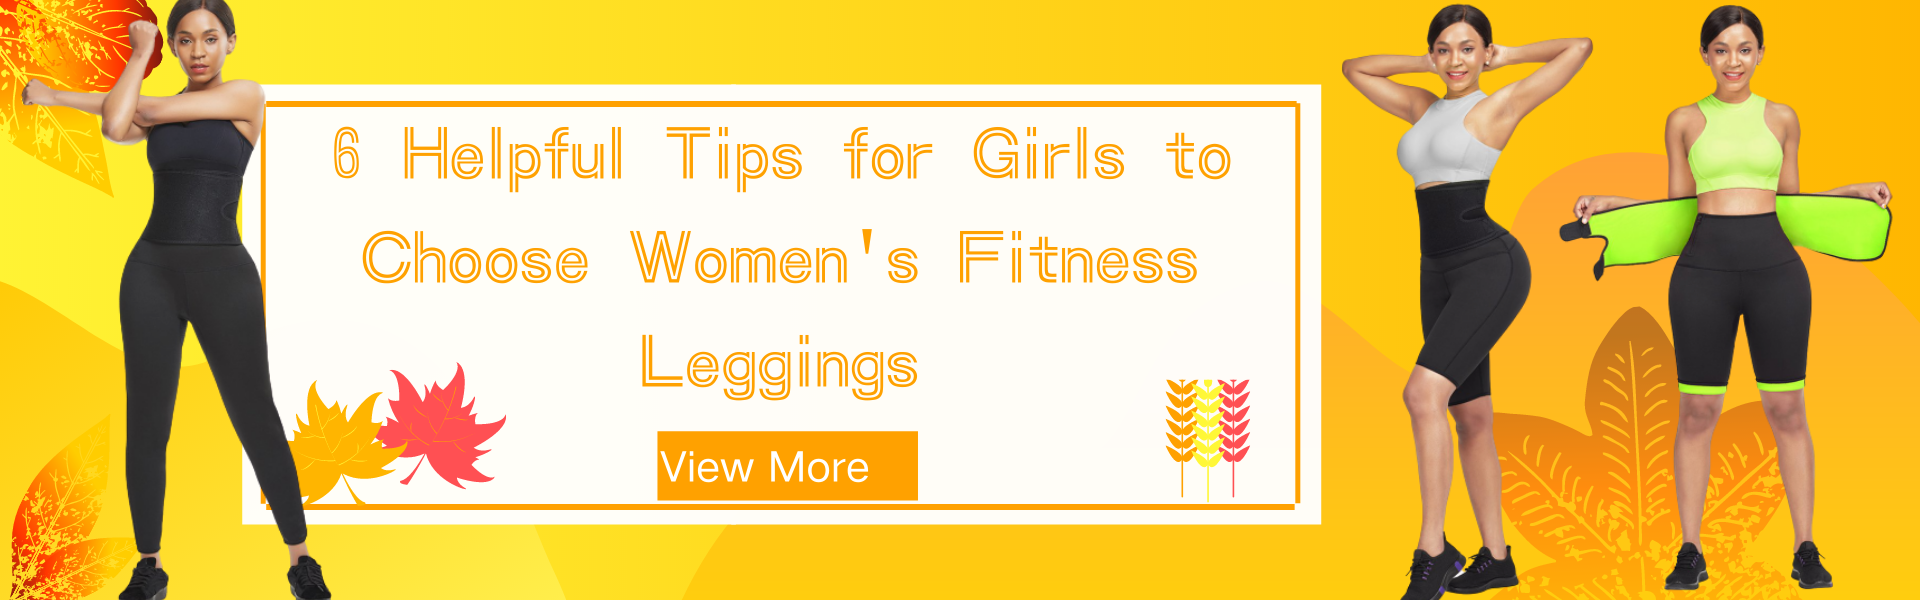 6 Helpful Tips for Girls to Choose Women's Fitness Leggings